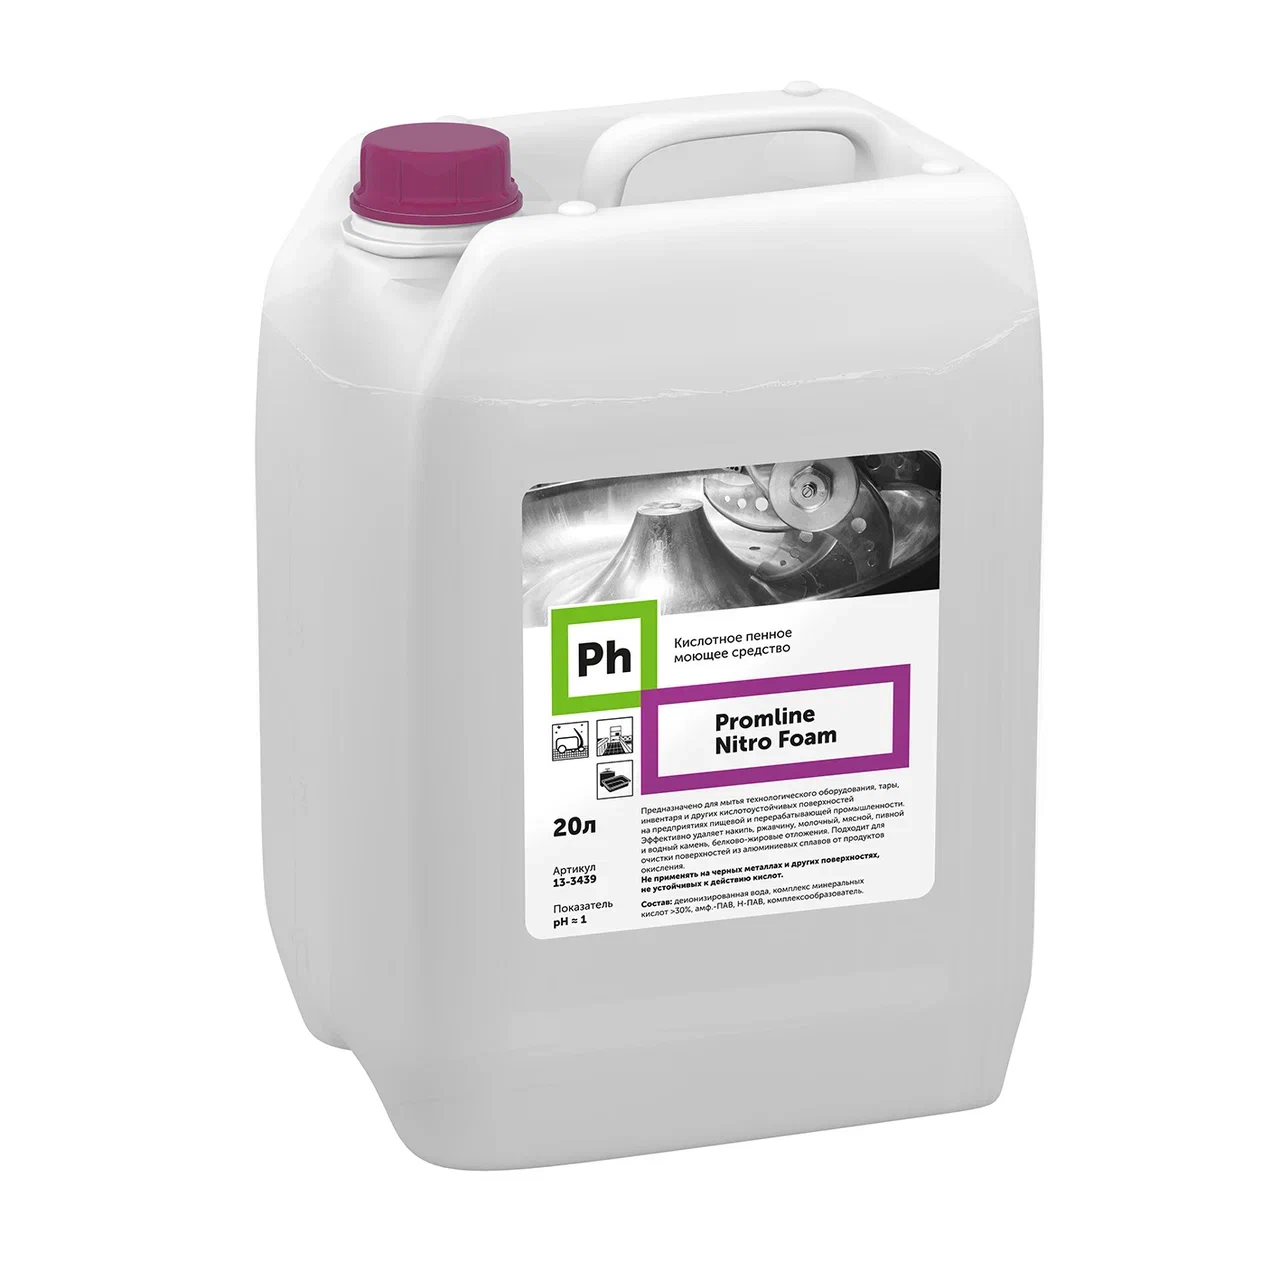 Ph Promline Nitro Foam Кислотное пенное моющее средство, 20 л